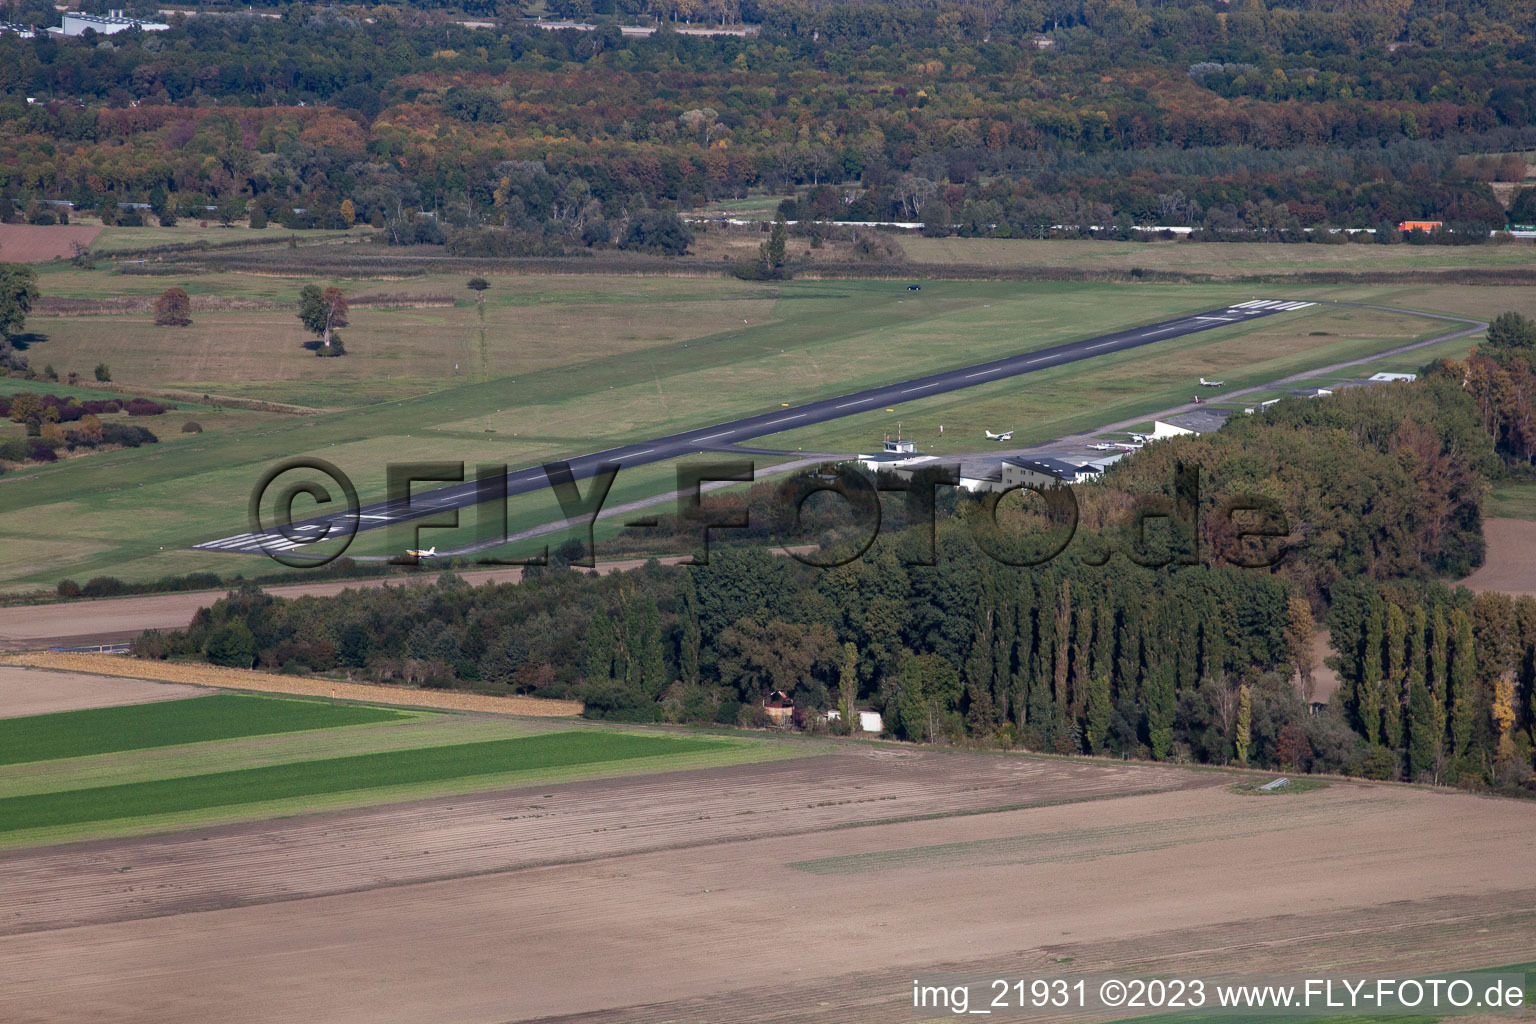 Luftbild von Flugplatz in Worms im Bundesland Rheinland-Pfalz, Deutschland